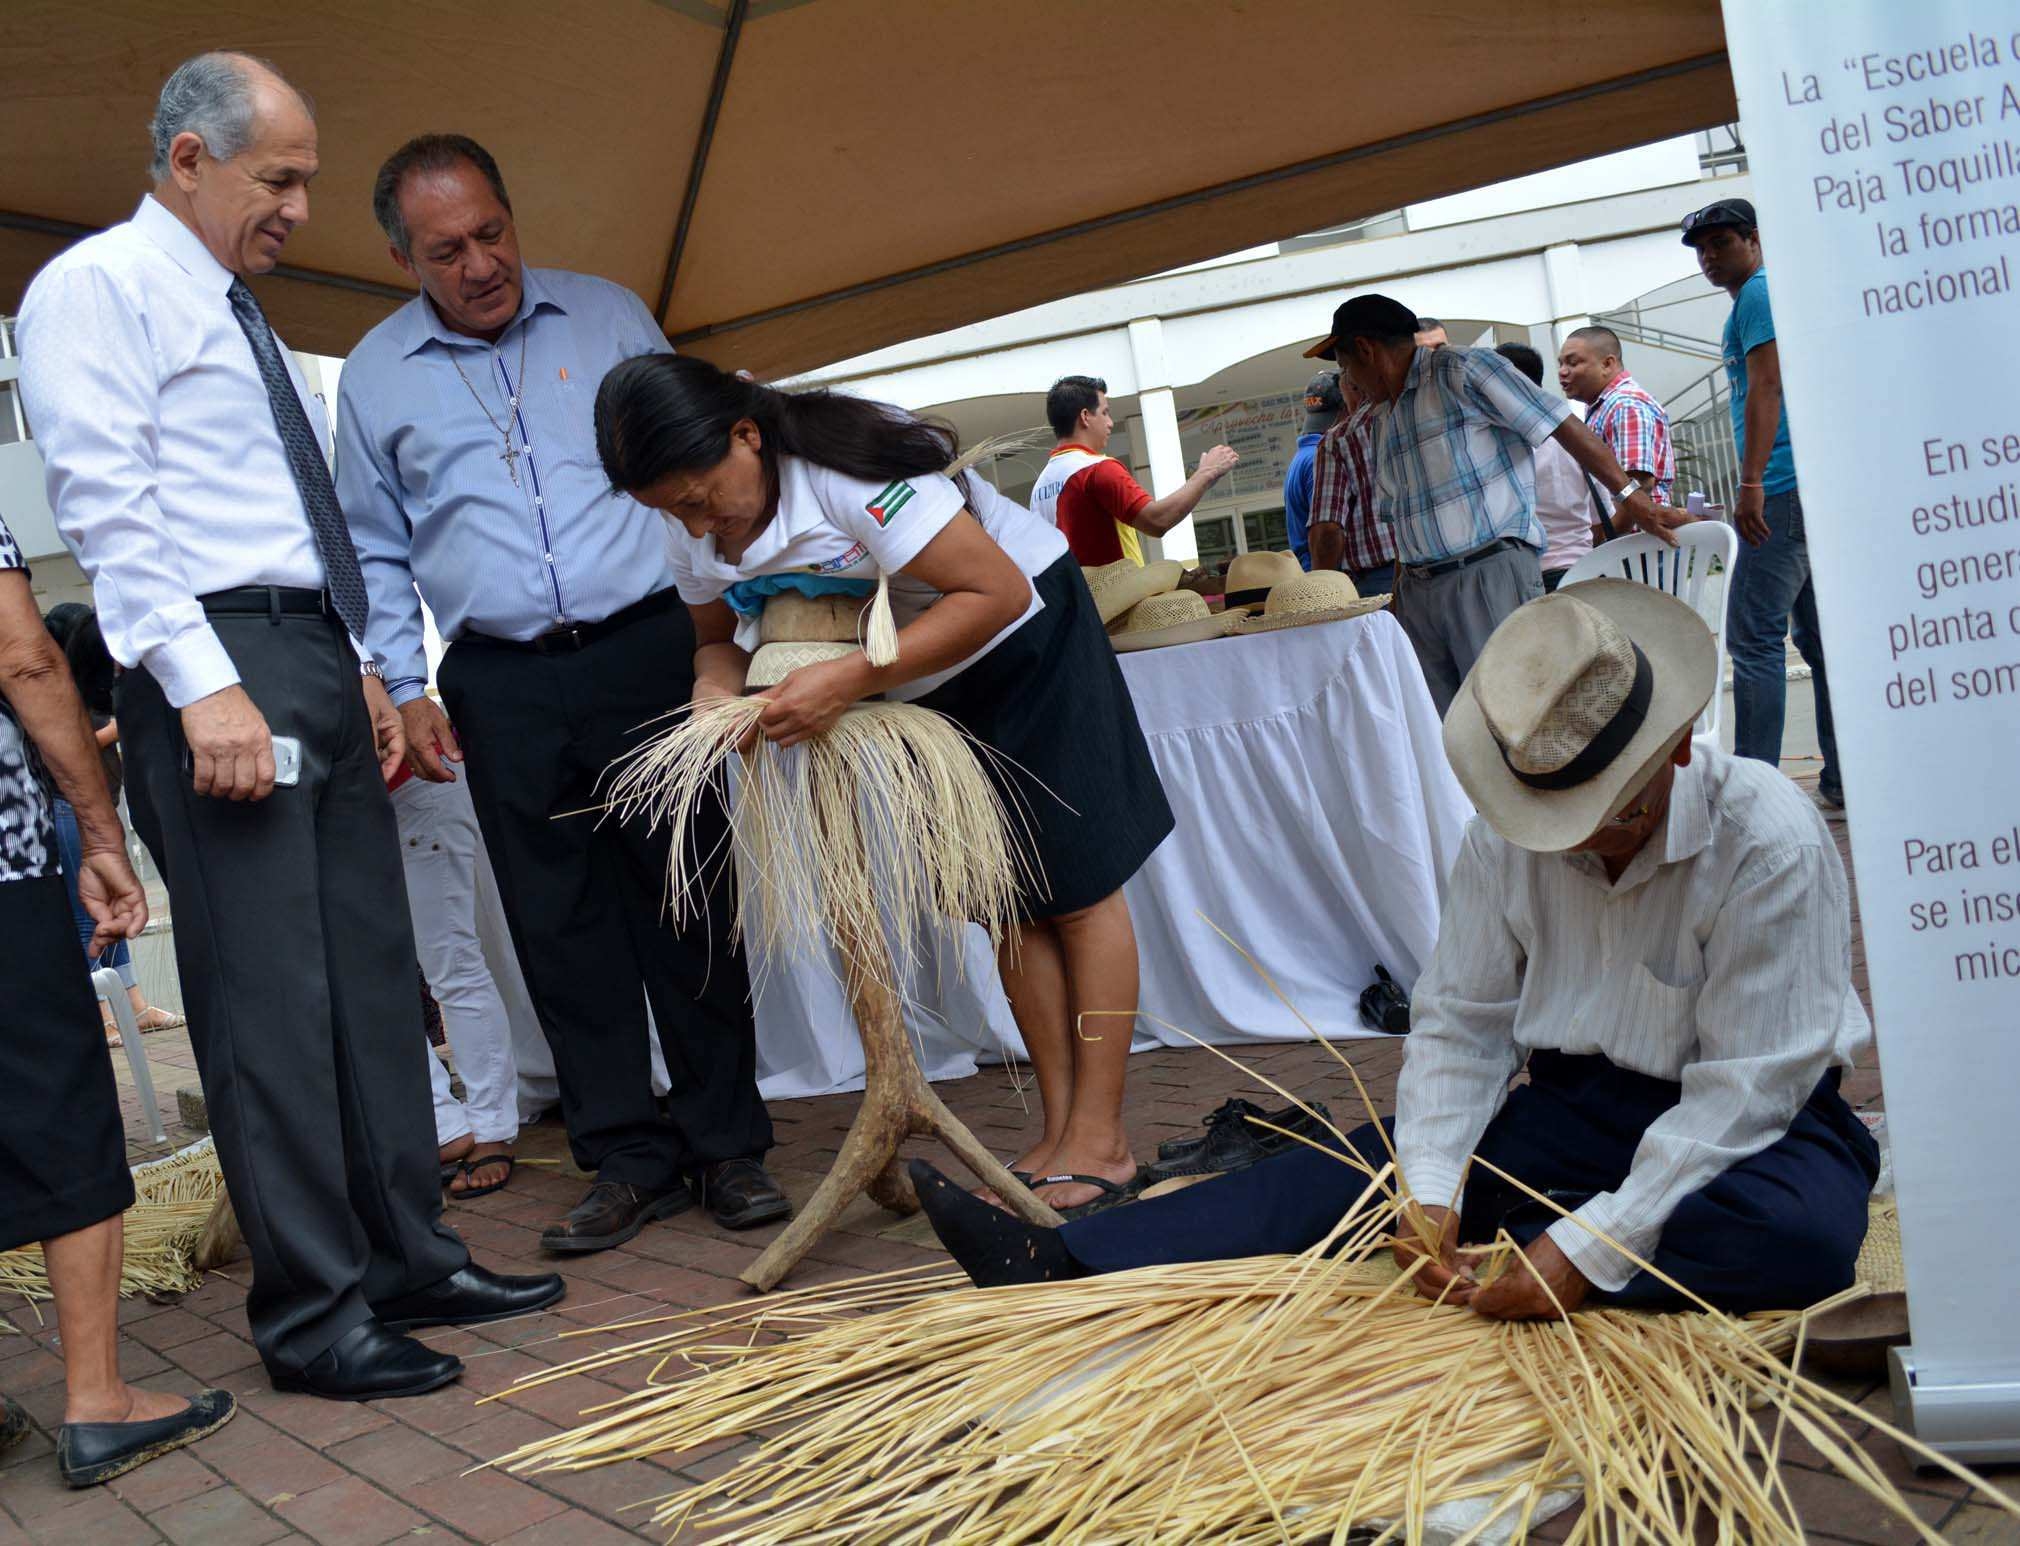 José Emiliano Mero Anchundia (75) y Aurora Mecias Cedeño (67) tejedores de Santa Ana, en exposición en Chone